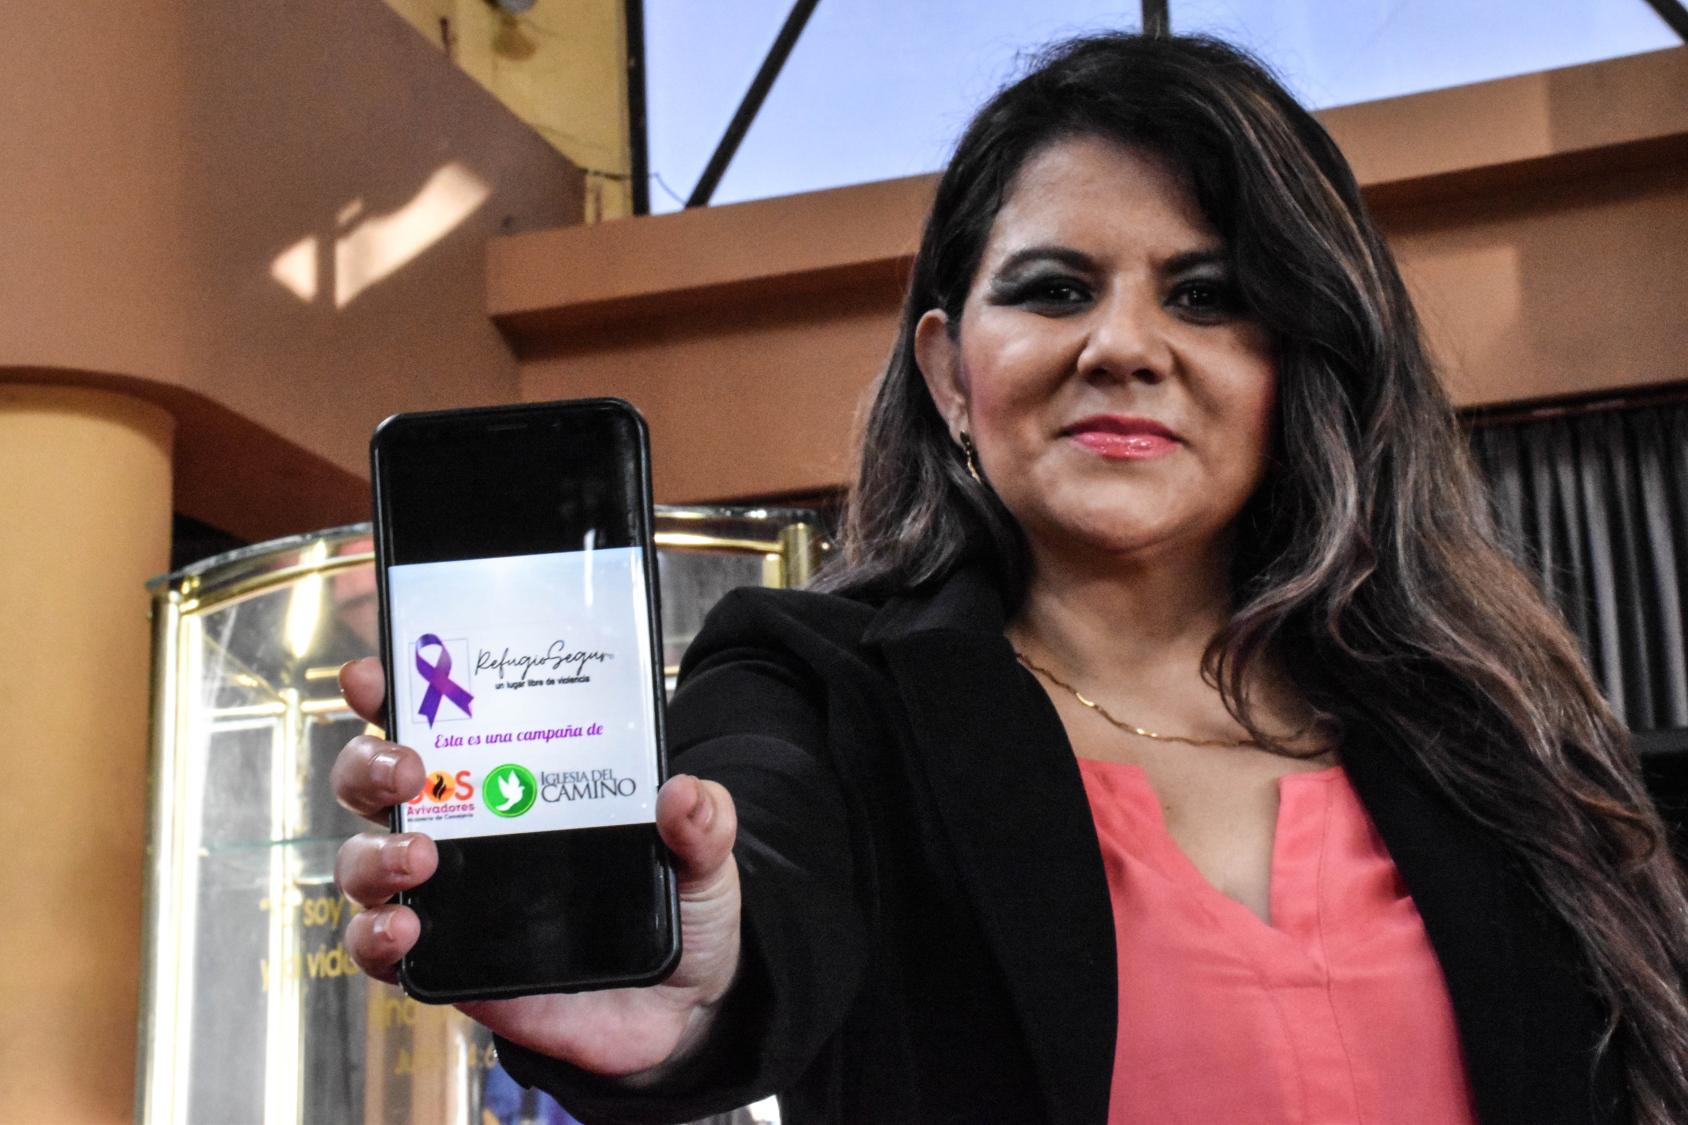 امرأة تواجه الكاميرا وتحمل هاتفًا يعرض صورة تحتوي على شريط أرجواني وعبارة مكتوبة بالاسبانية ترجمتها إلى العربية "الملاذ الامن".